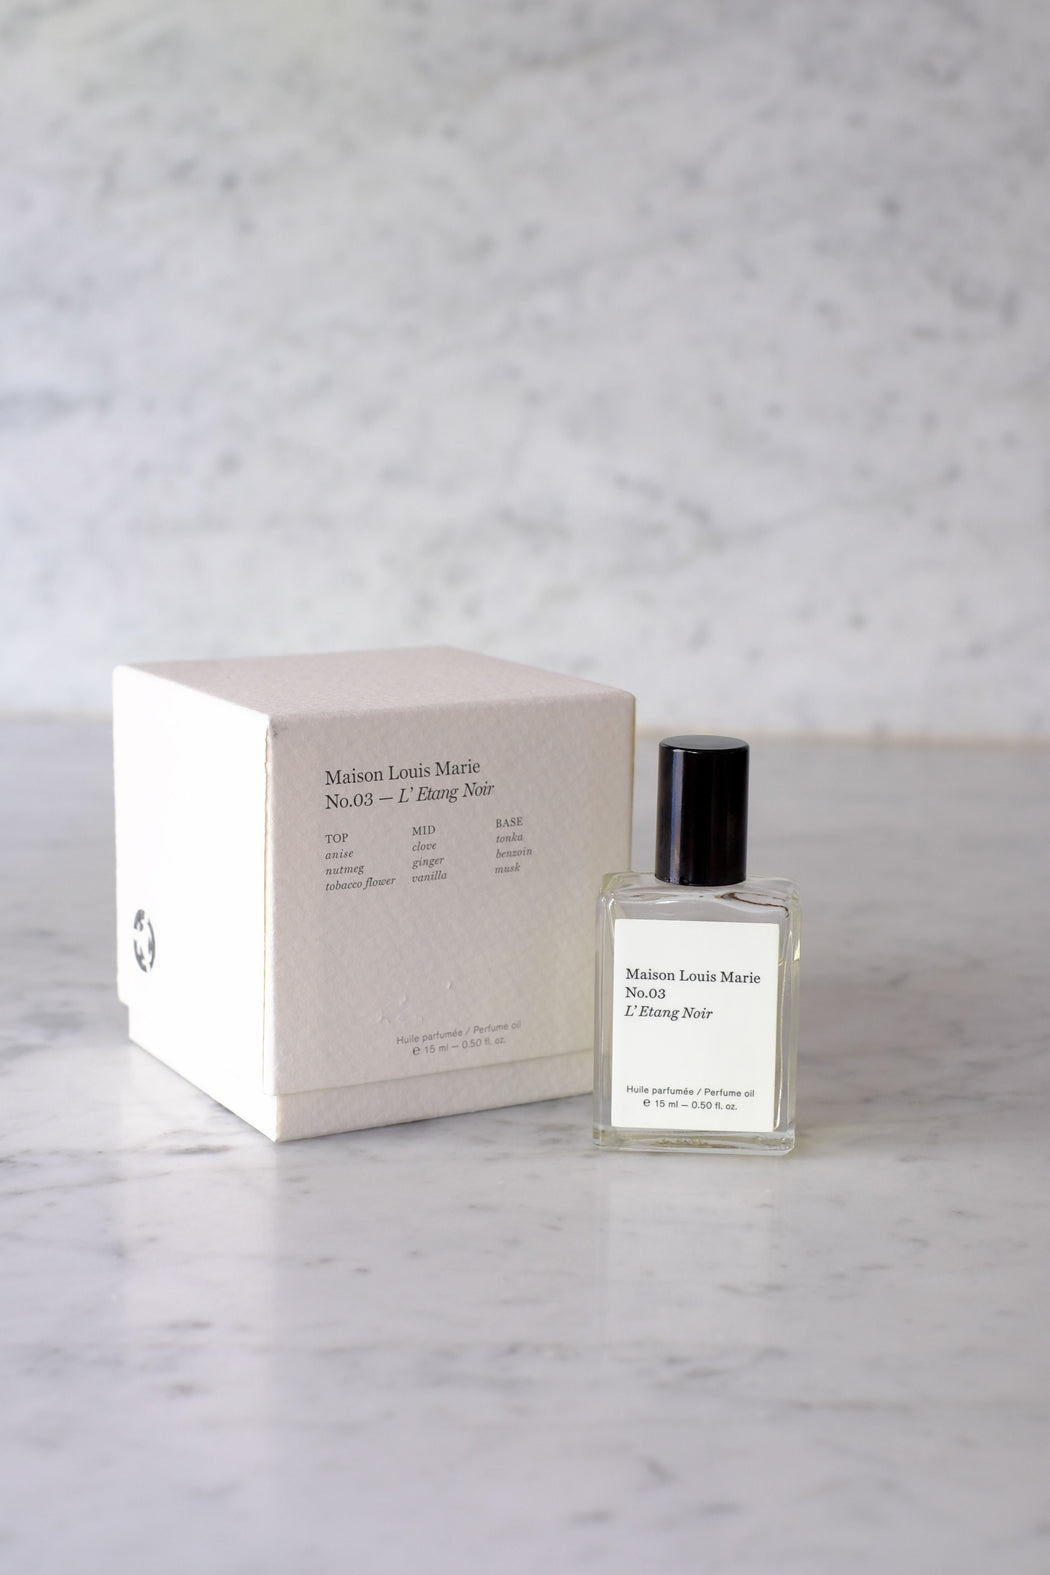 Maison Louis Maire :: Perfume Oil No.3  L'Etang Noir